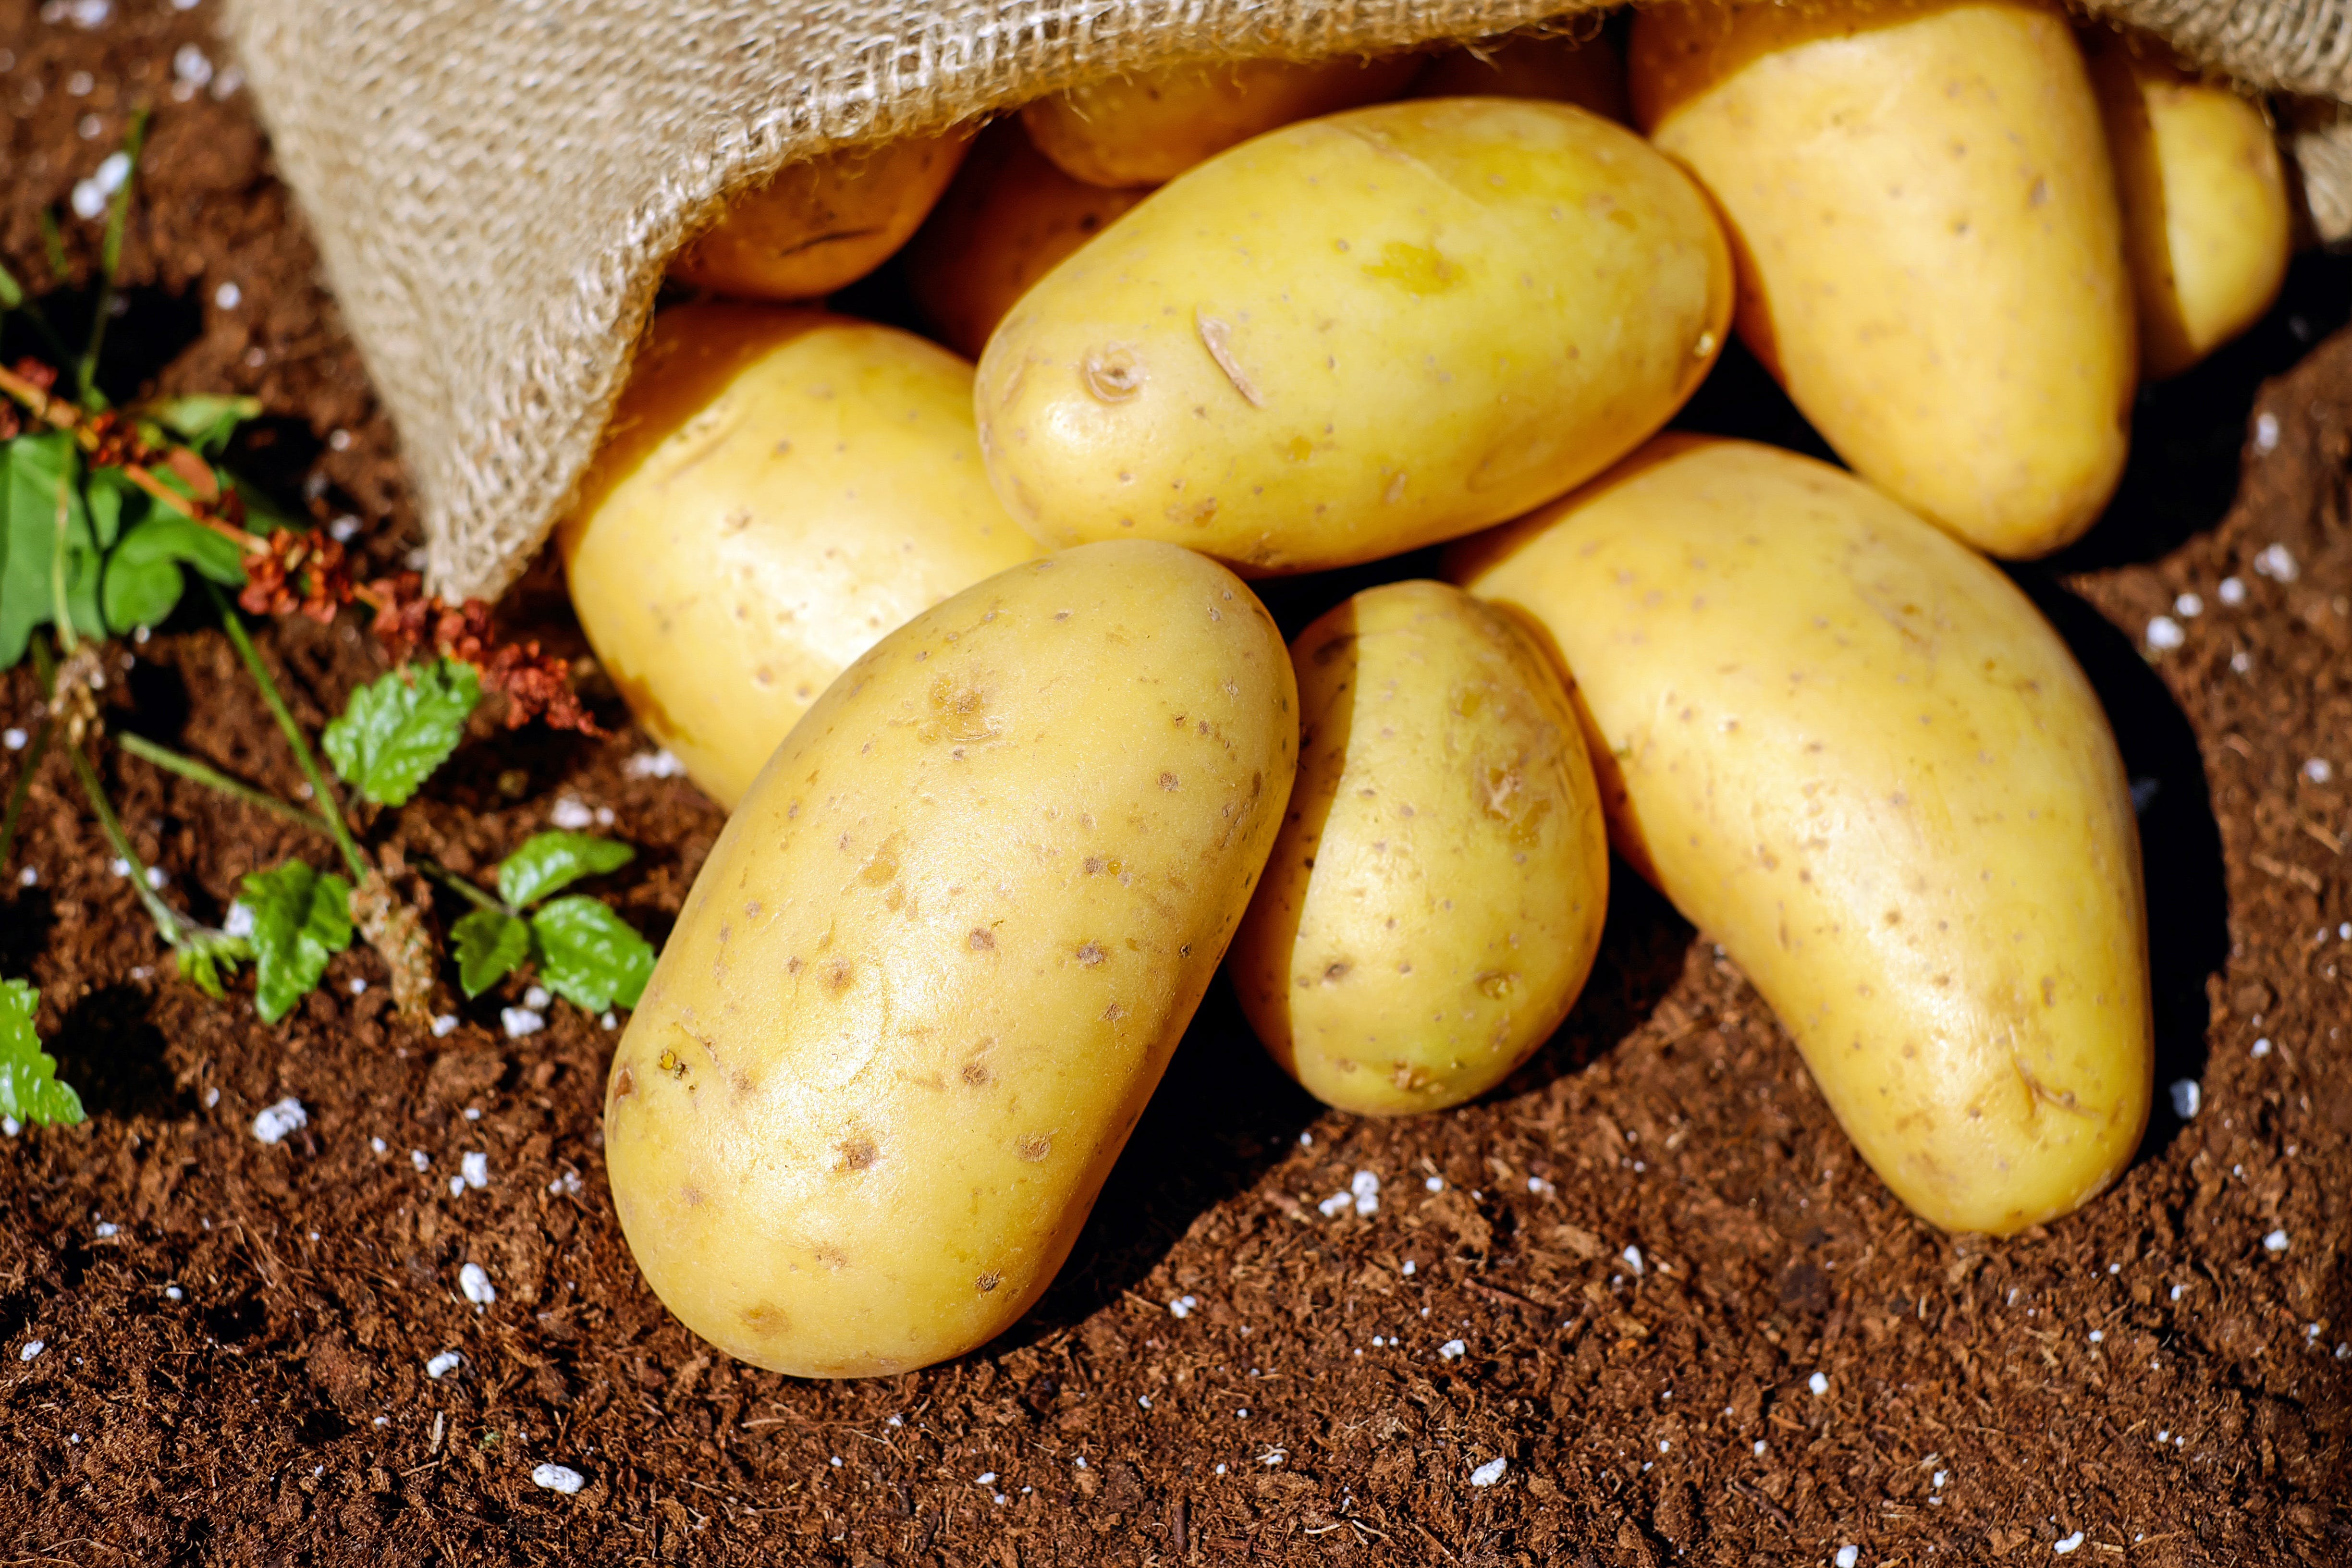 Из-за рекордных цен Украина начала импортировать картофель из Польши.
Фото иллюстративное